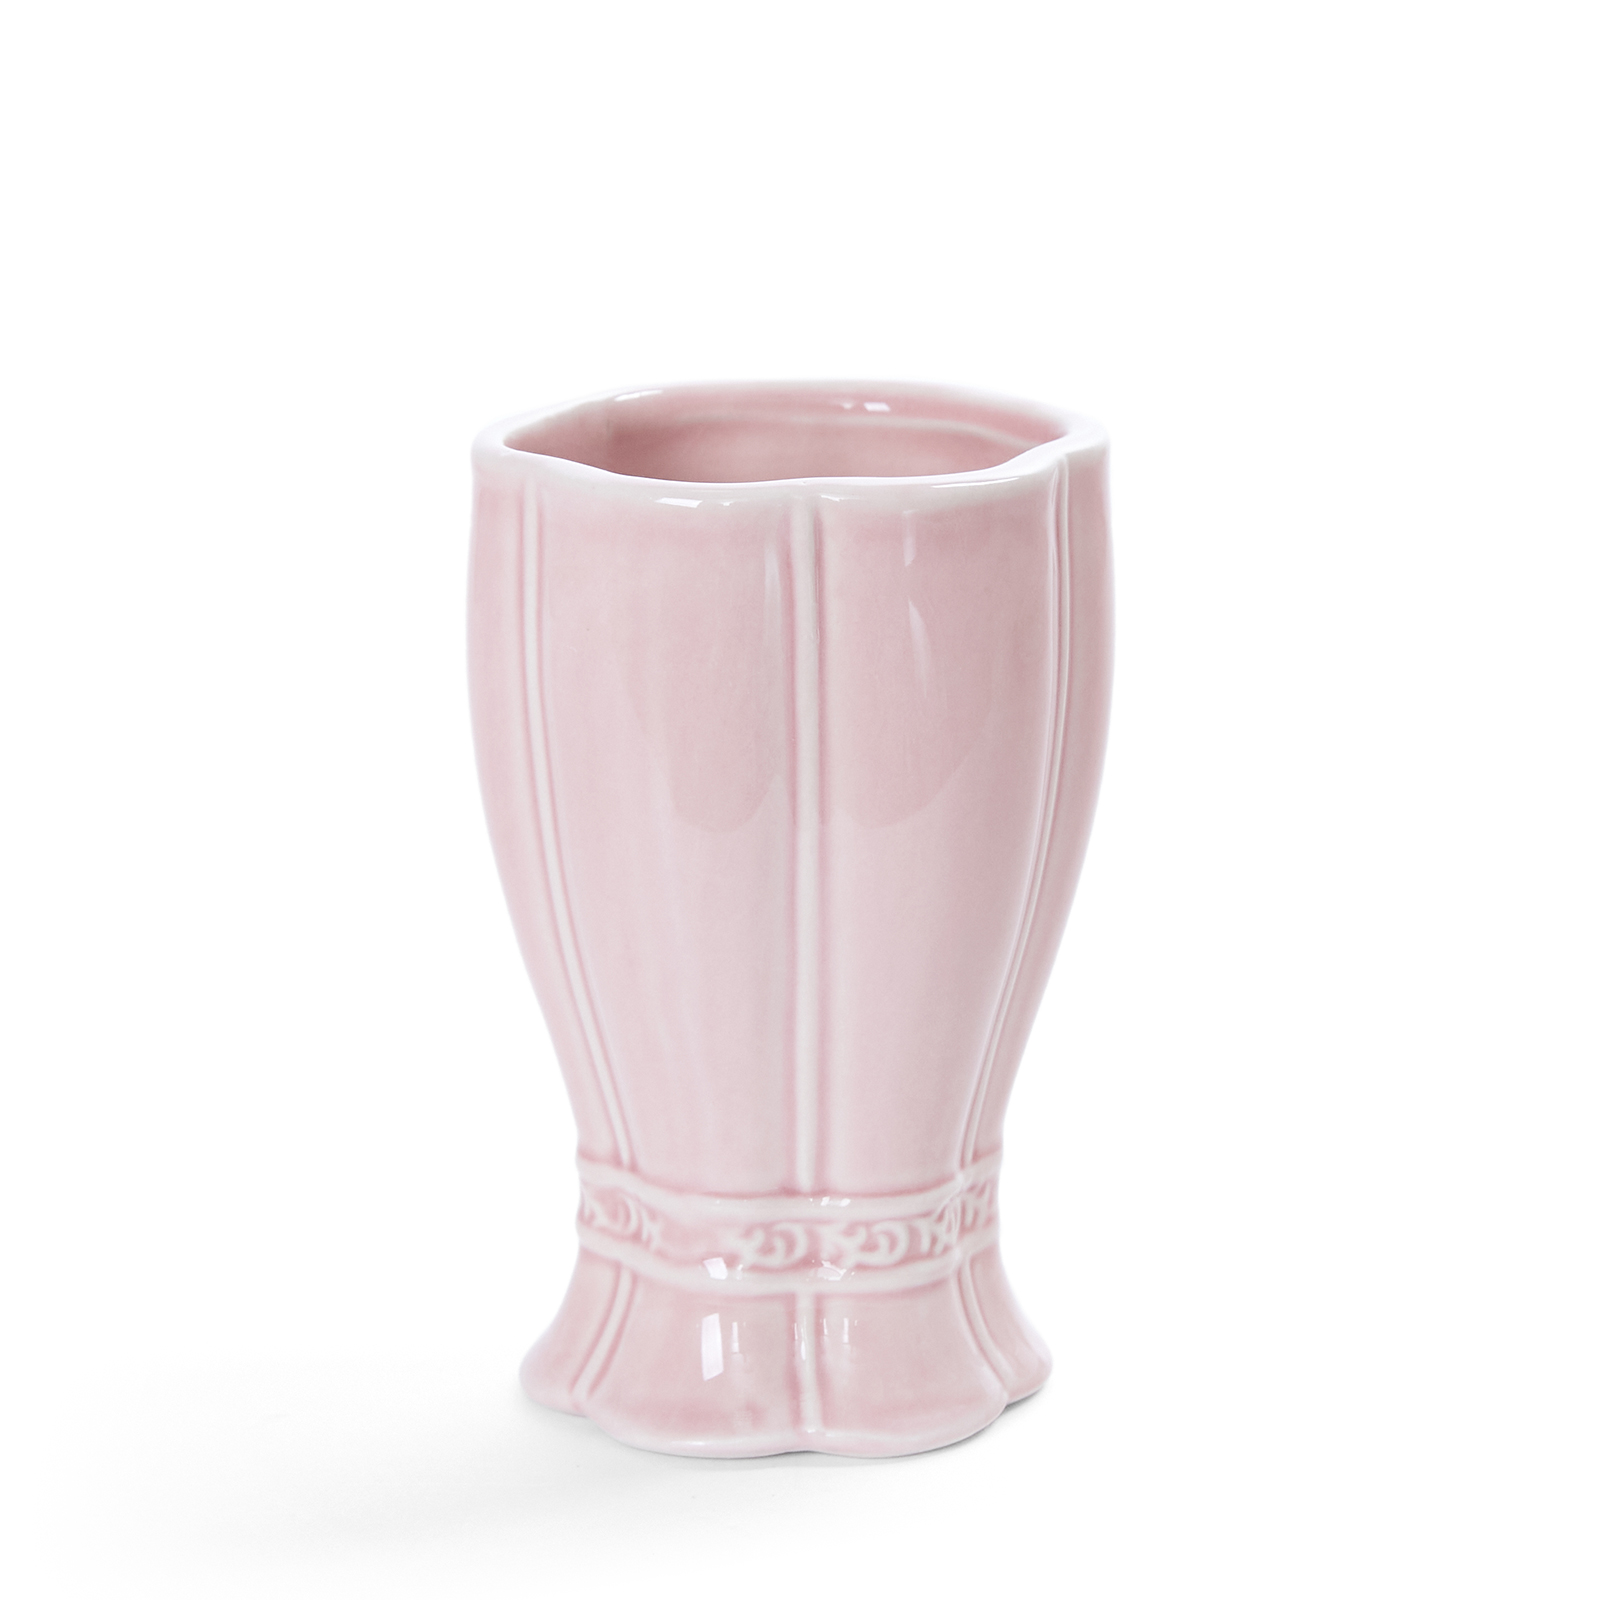 Стакан для зубных щеток Ostellato, розовый продуктовая тележка минни маус розовый